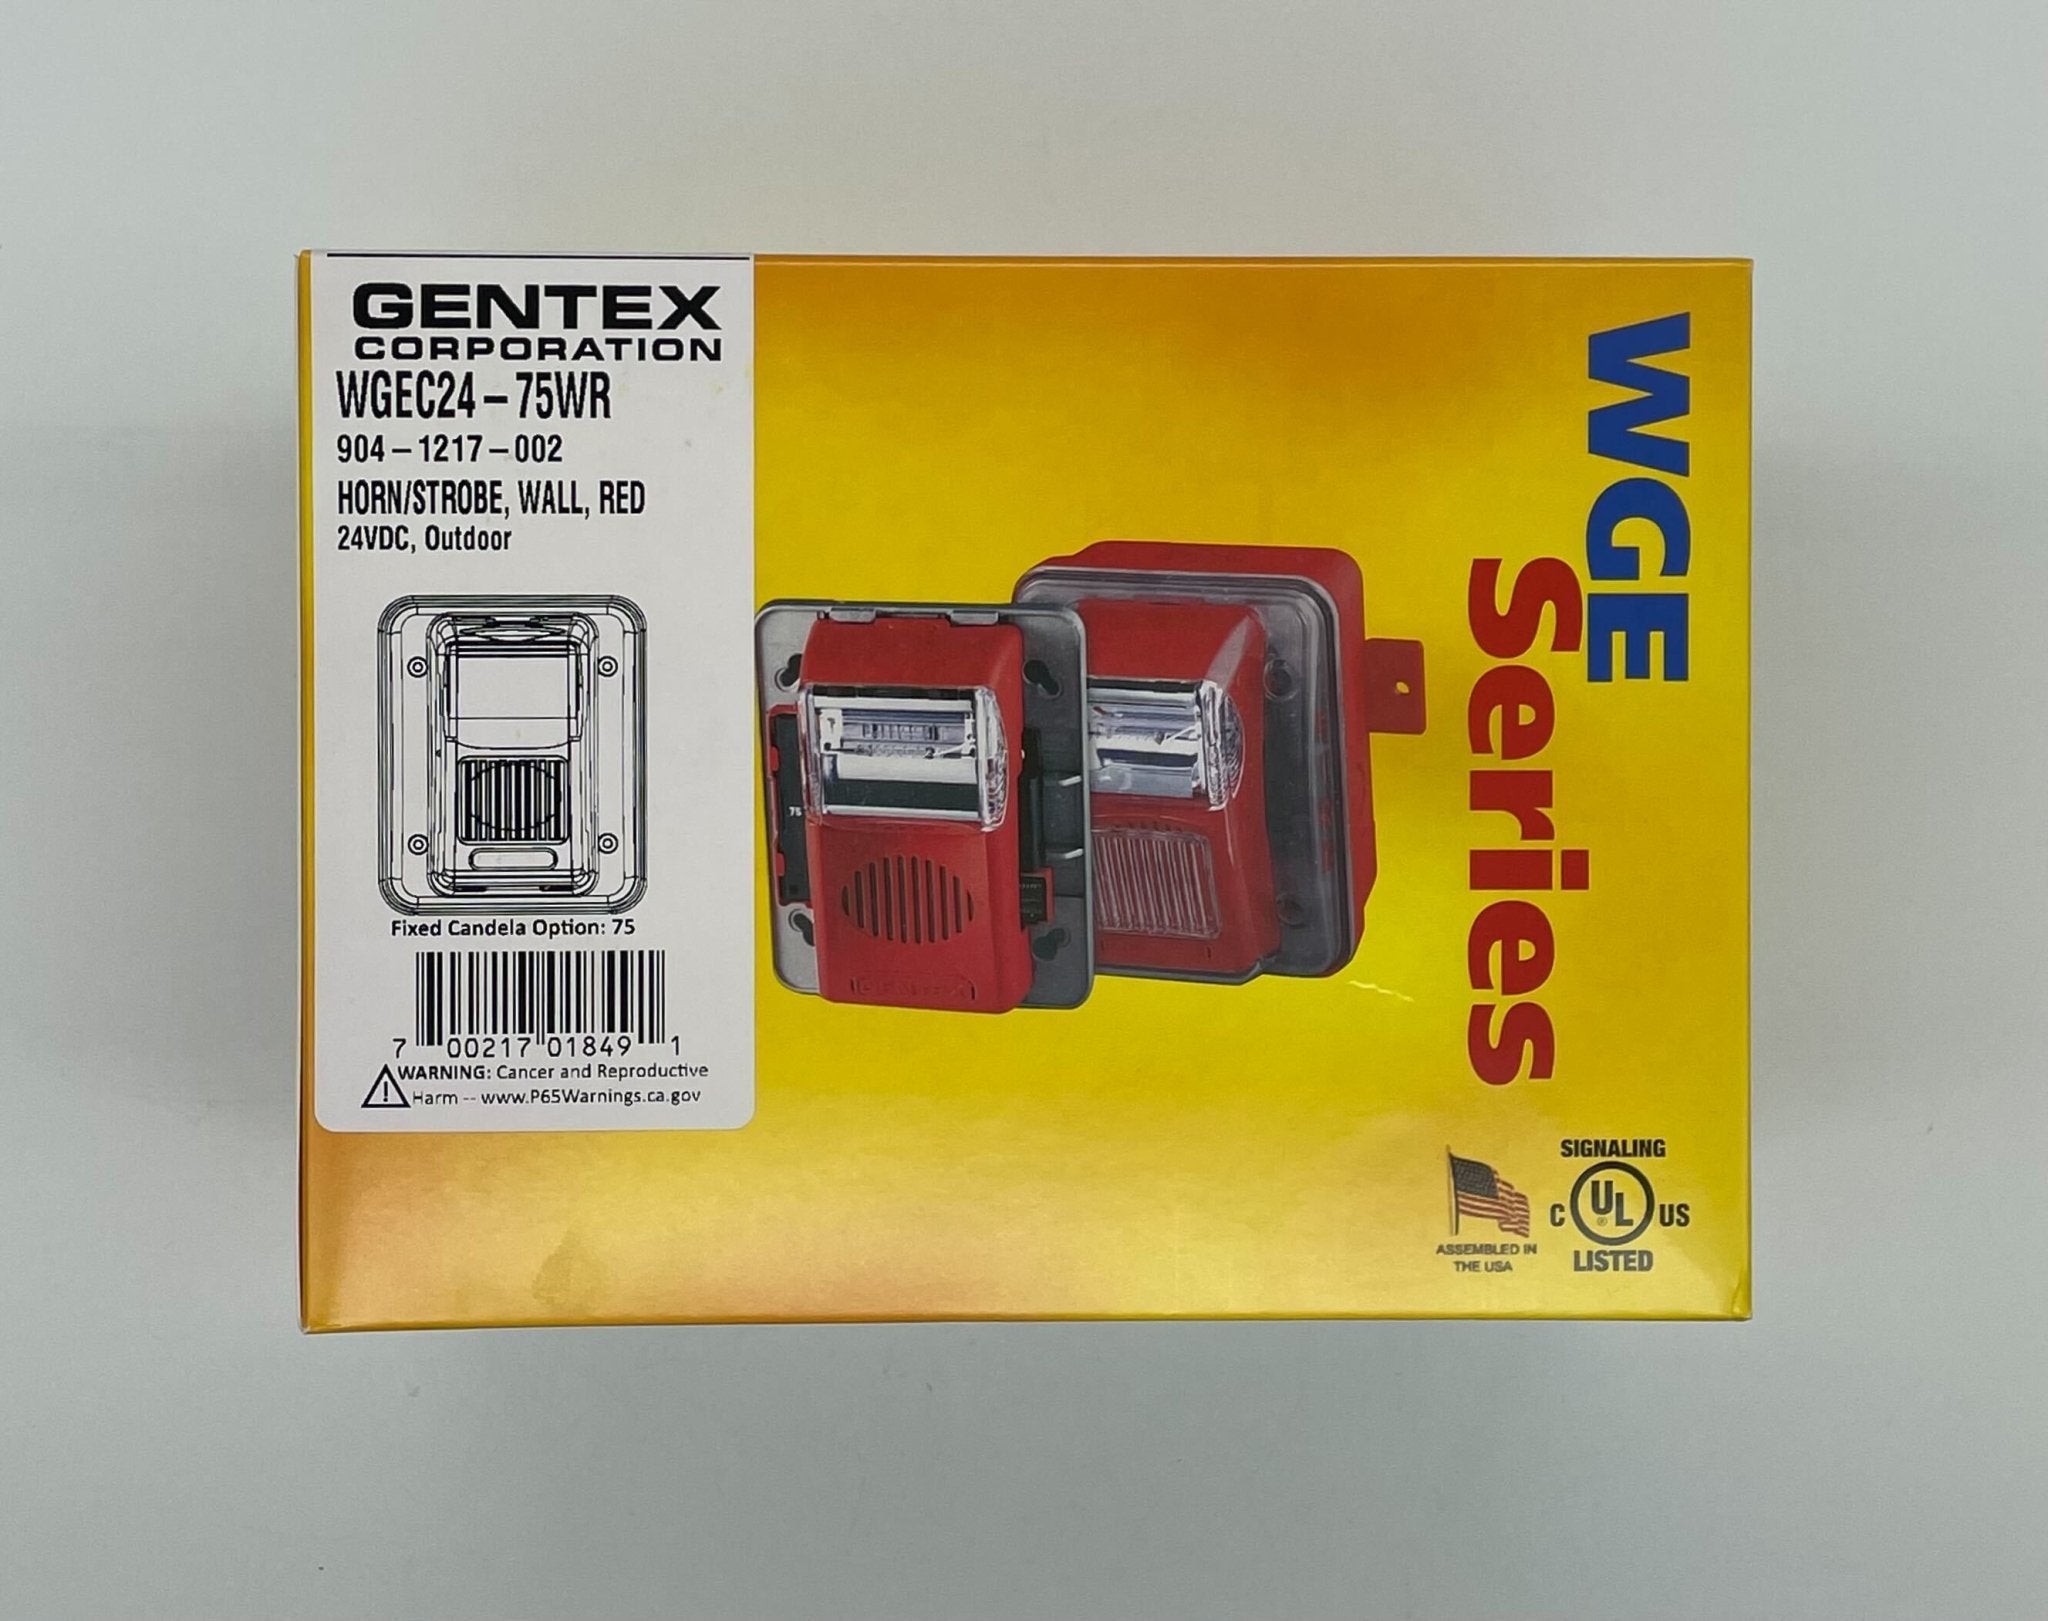 Gentex WGEC24-75WR Weatherproof Horn Strobe - The Fire Alarm Supplier